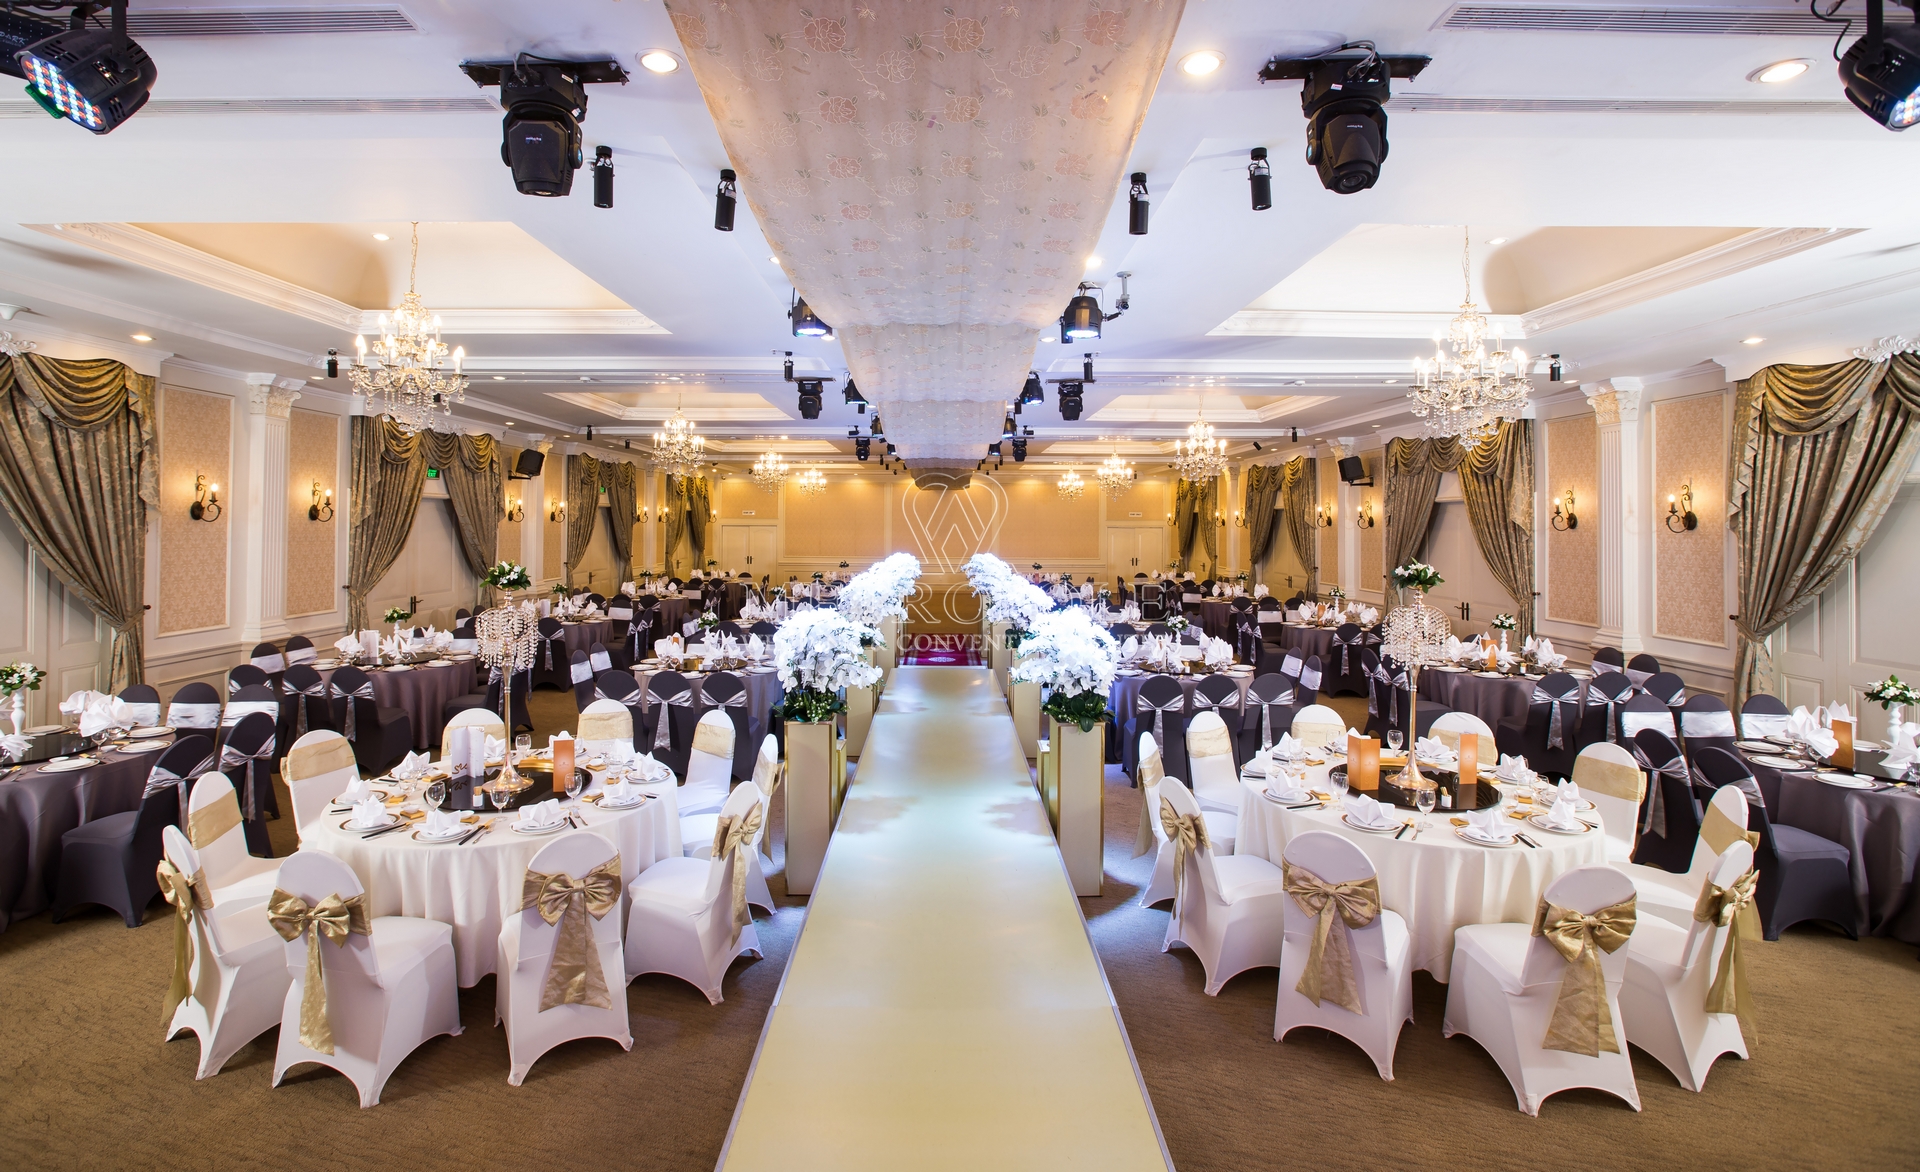 Hướng dẫn chi tiết cách chọn địa điểm tổ chức tiệc cưới hoàn hảo | Metropole